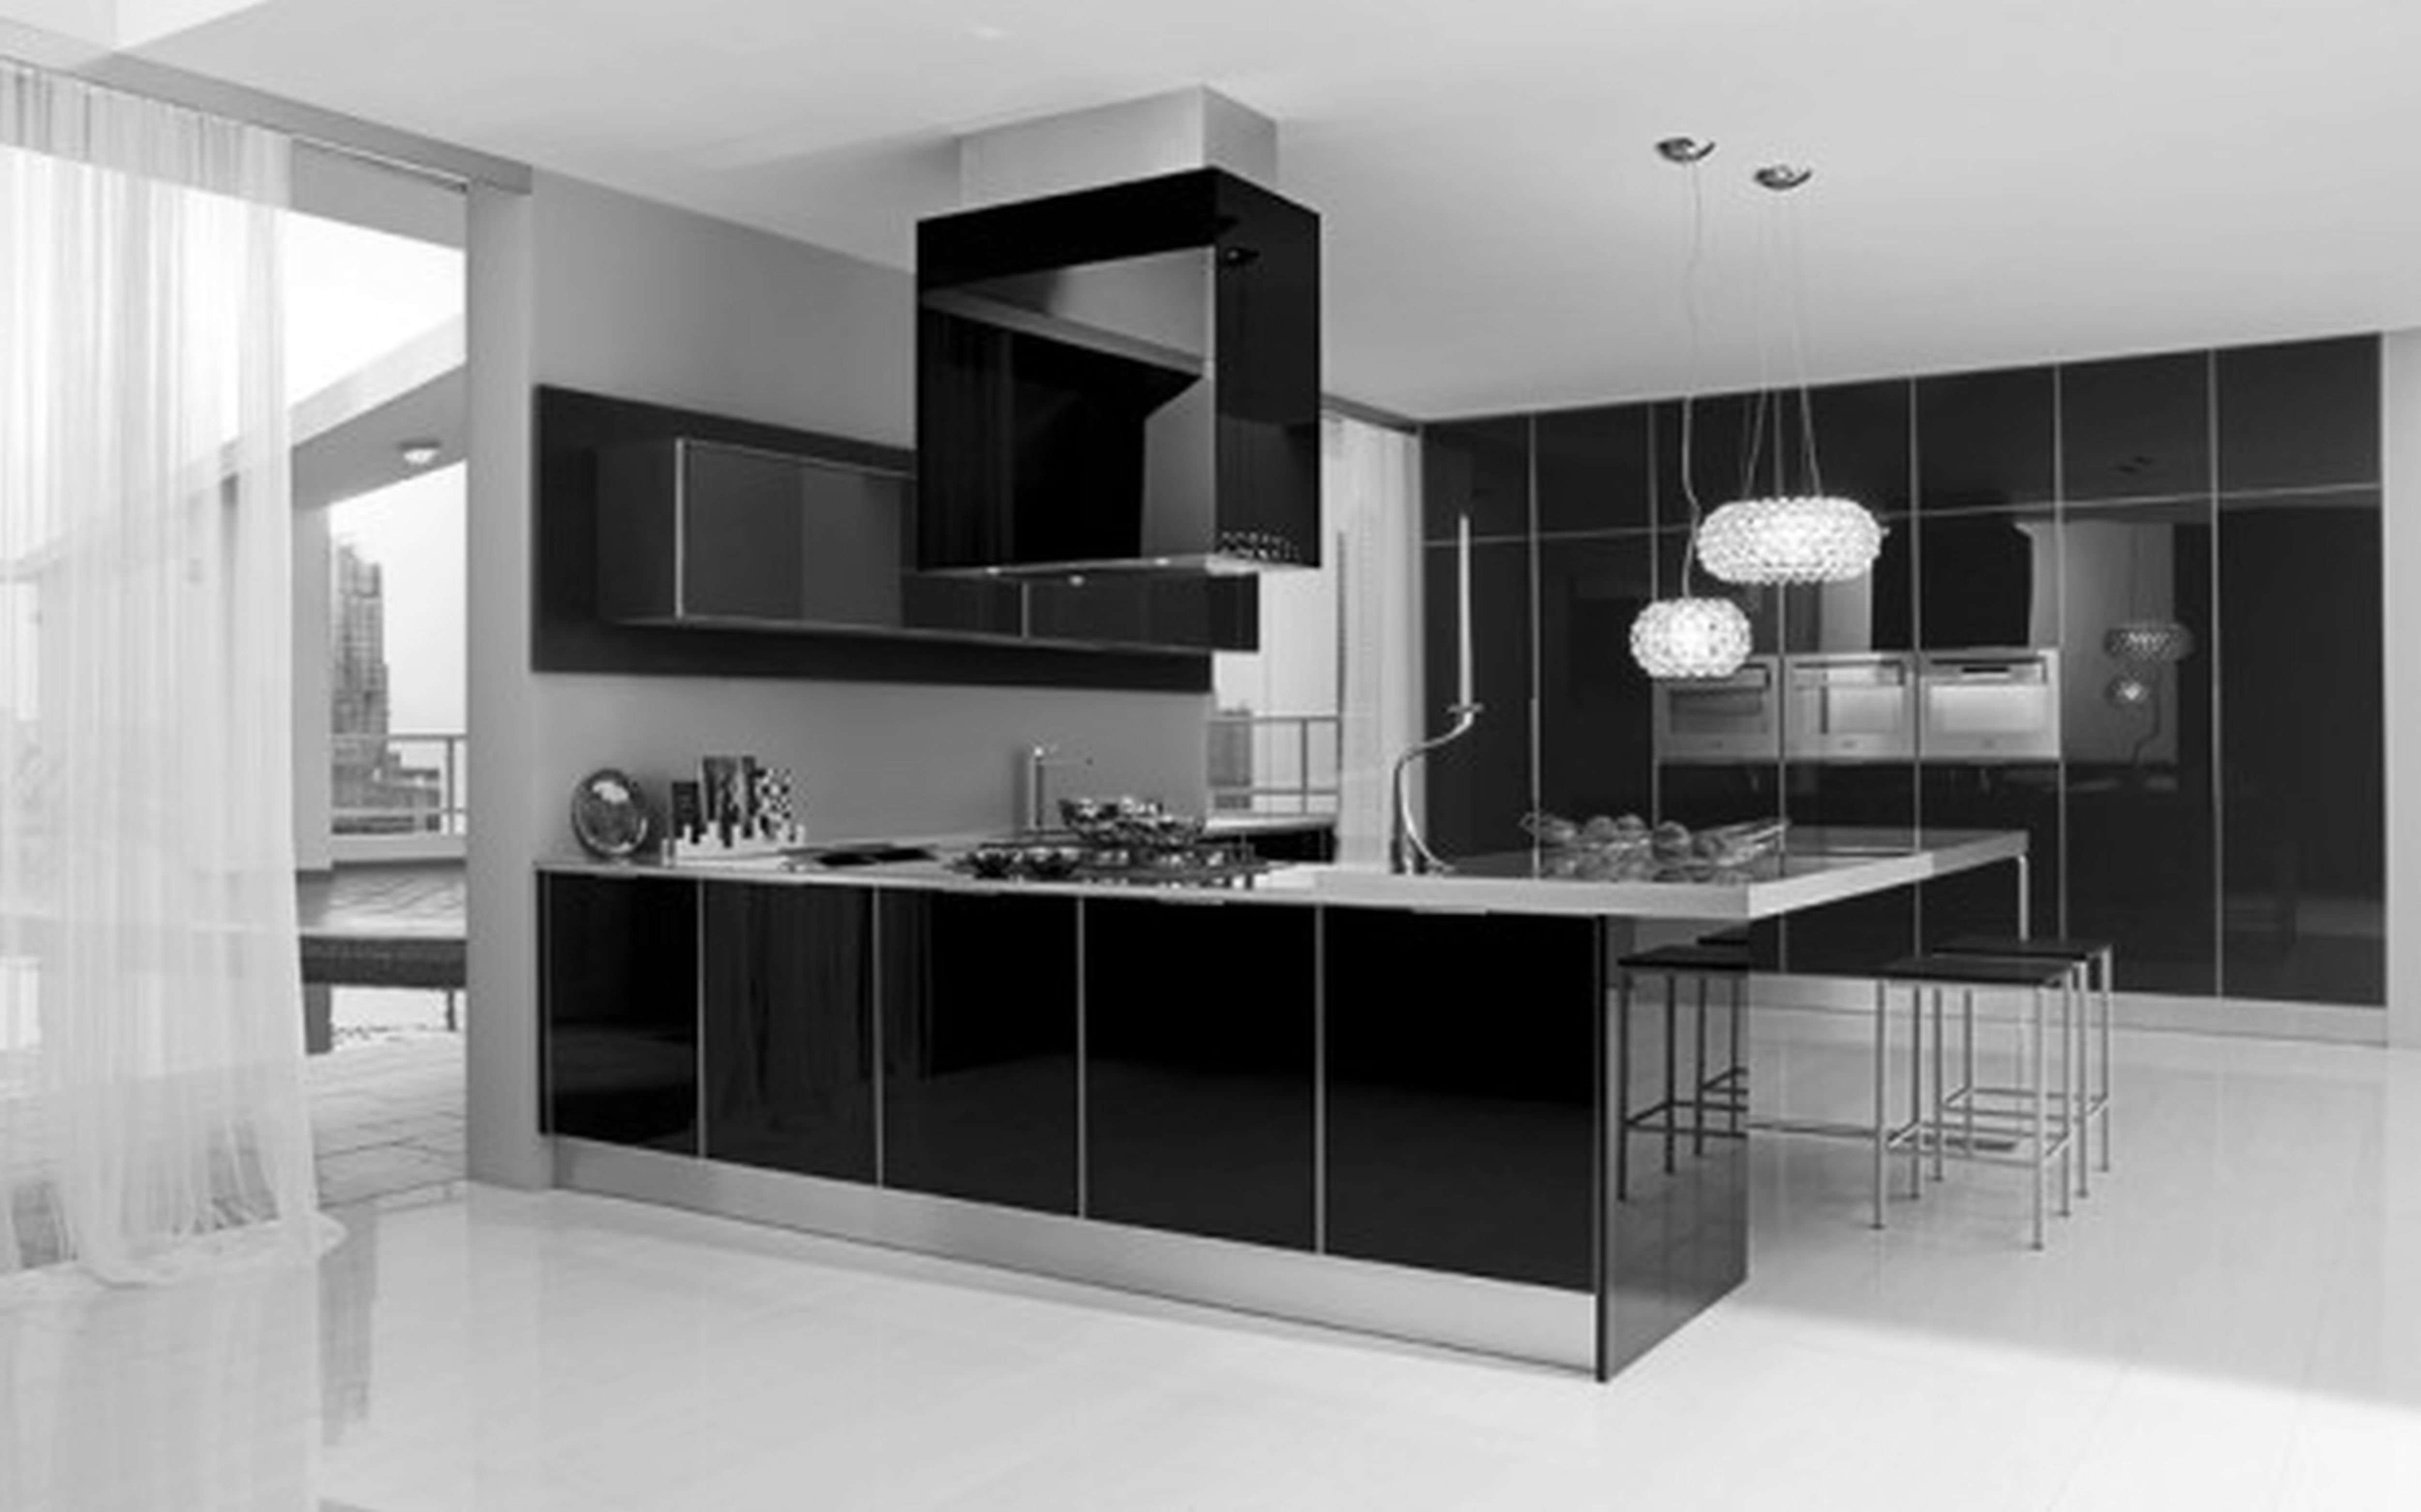 30 Monochrome Kitchen Design Ideas - The WoW Style